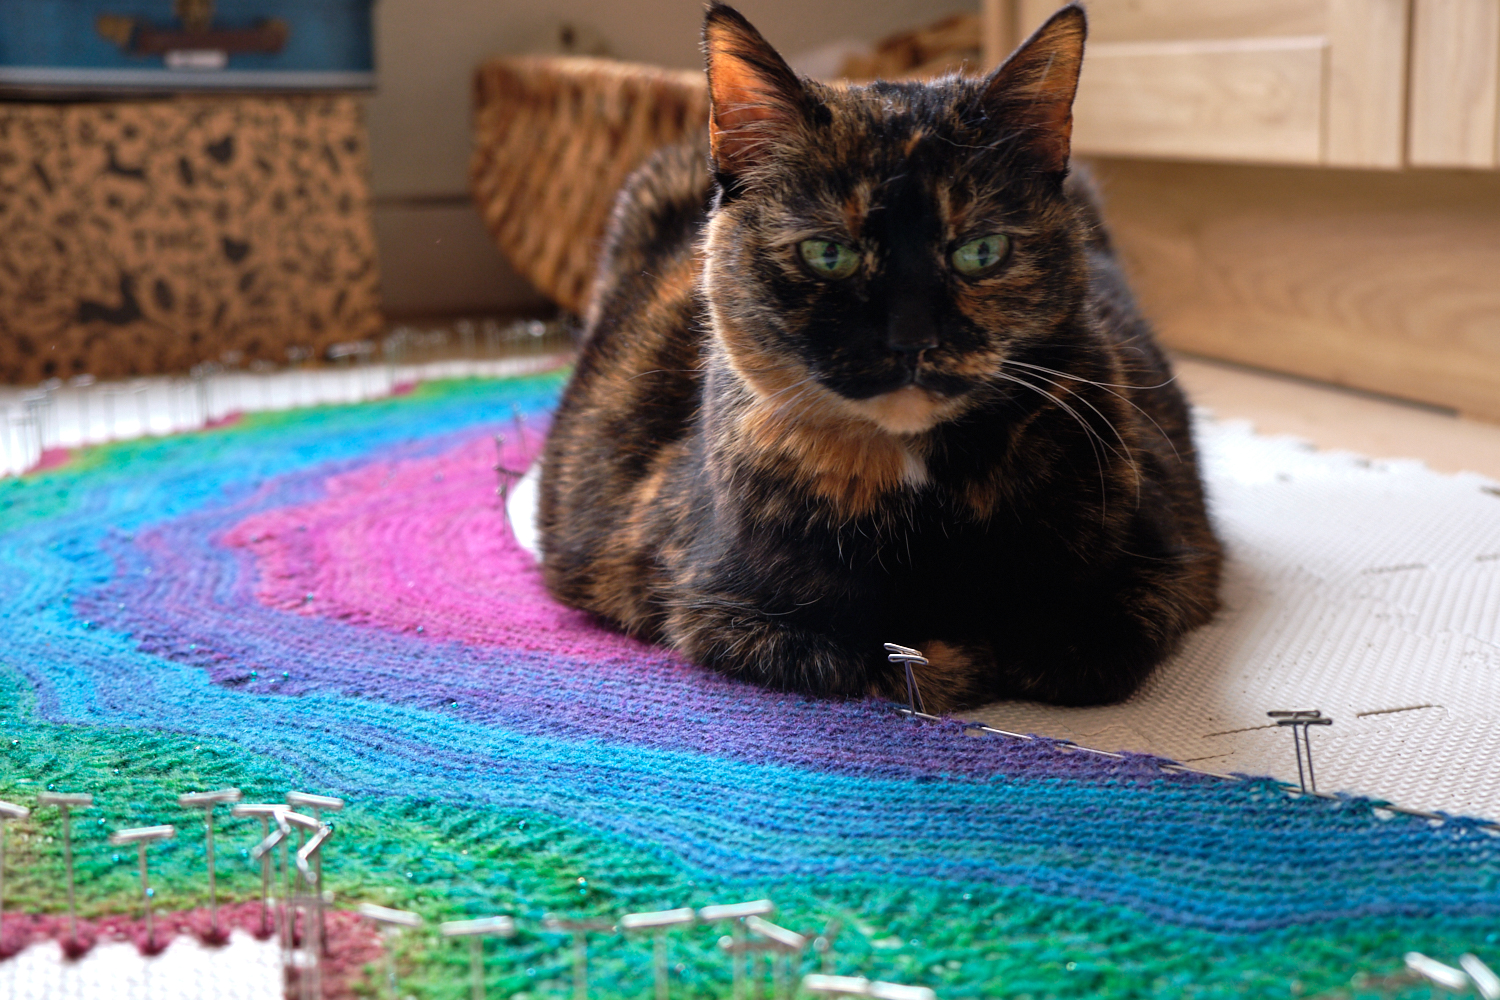 Knitting a rainbow